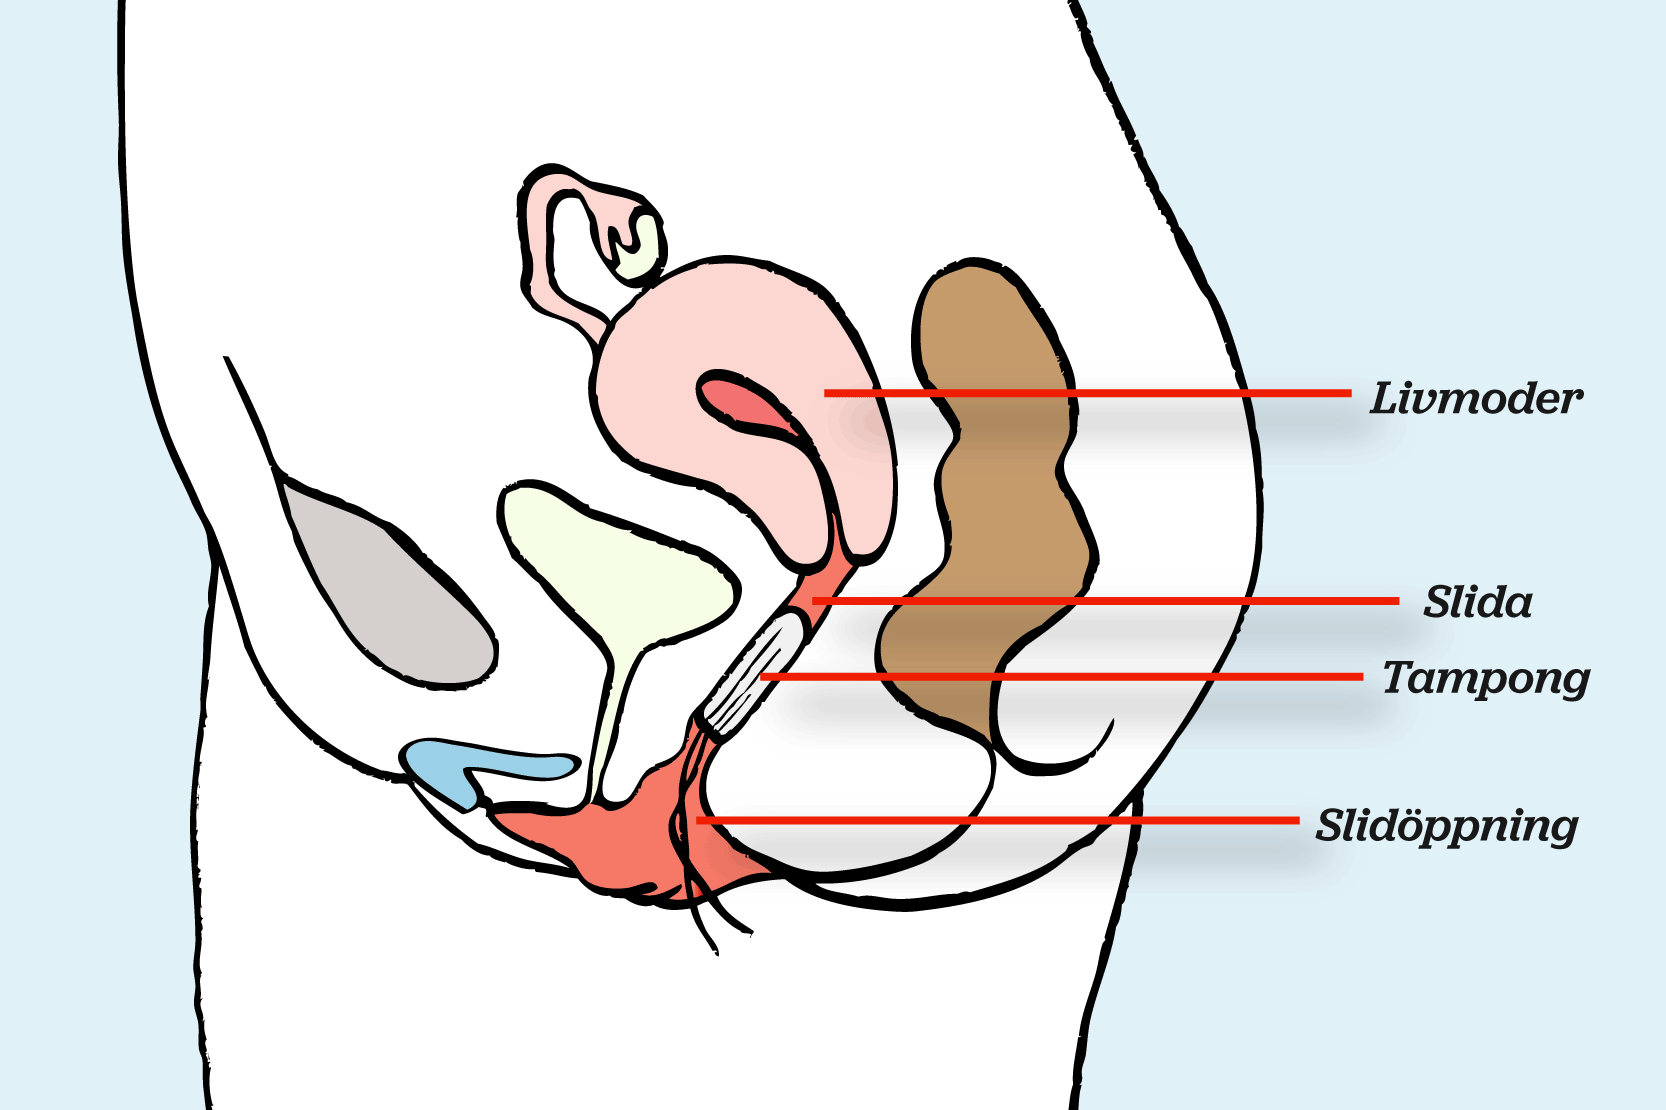 Slidöppningen, slidan och livmodern i genomskärning. En tampong sitter i slidan.